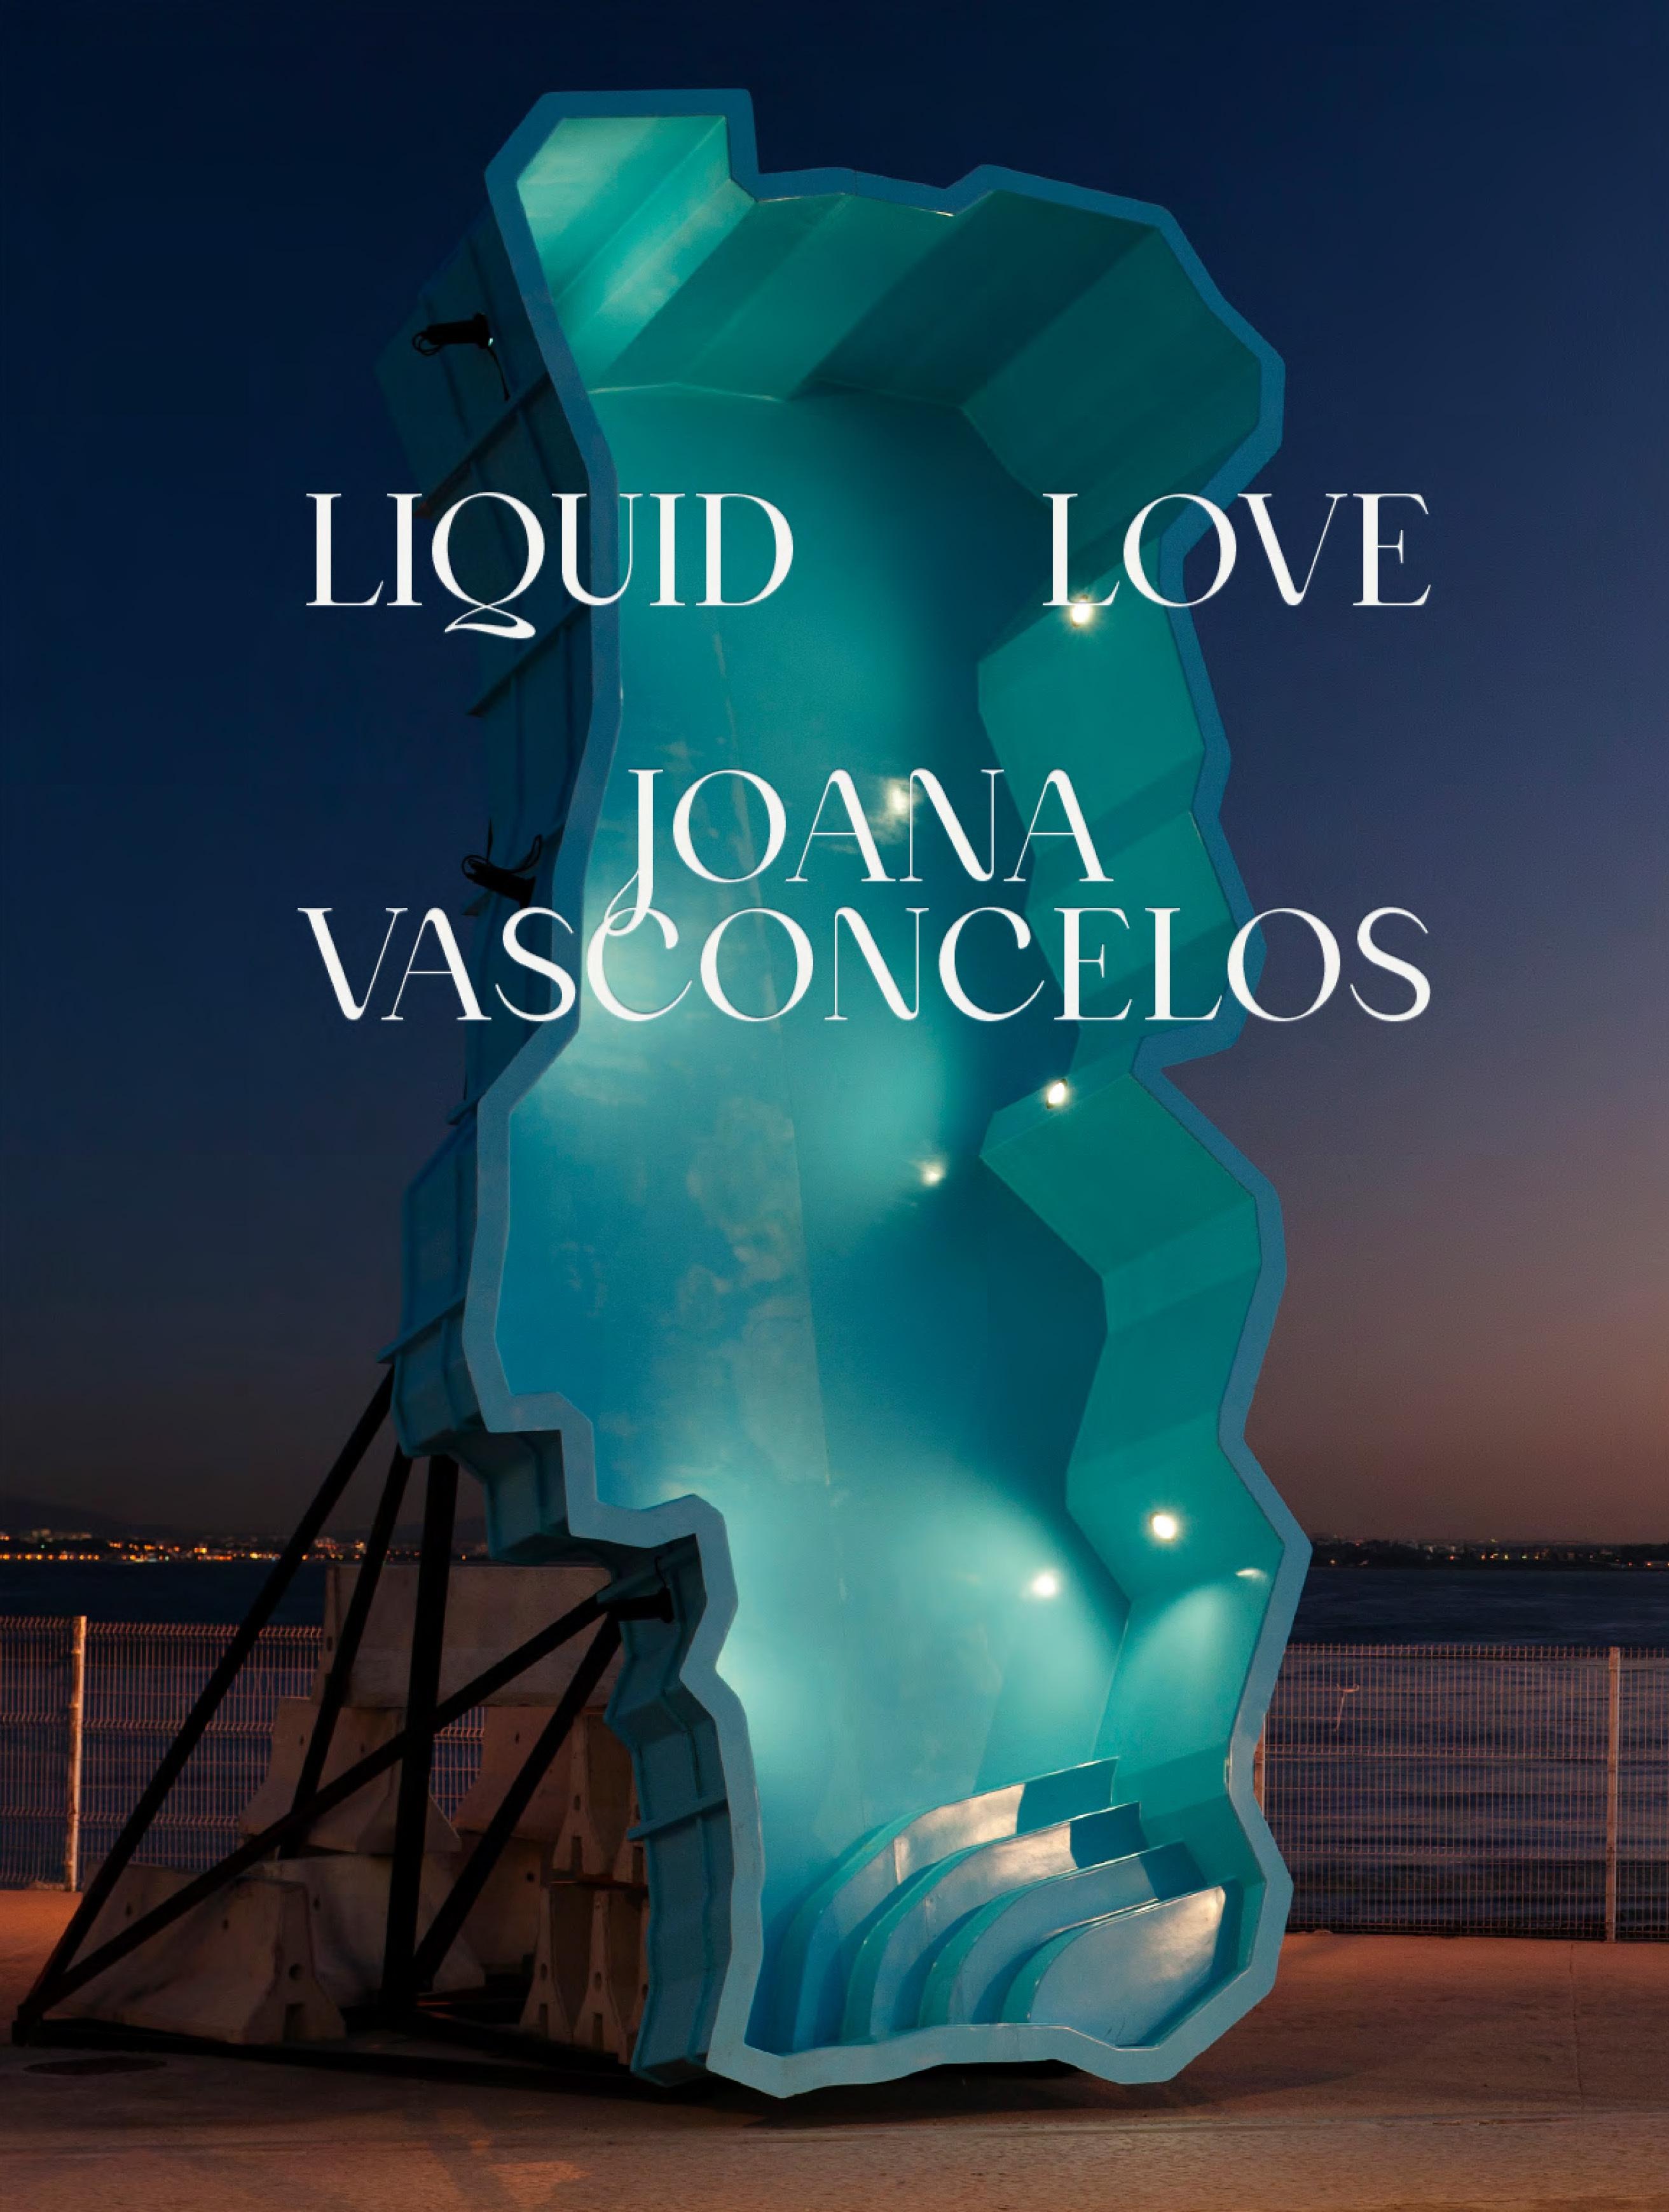 LIQUID LOVE "JOANA VASCONCELOS". 